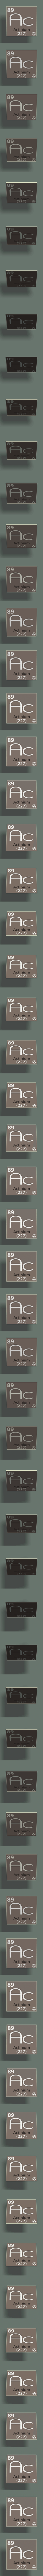 Actinium element #89/118